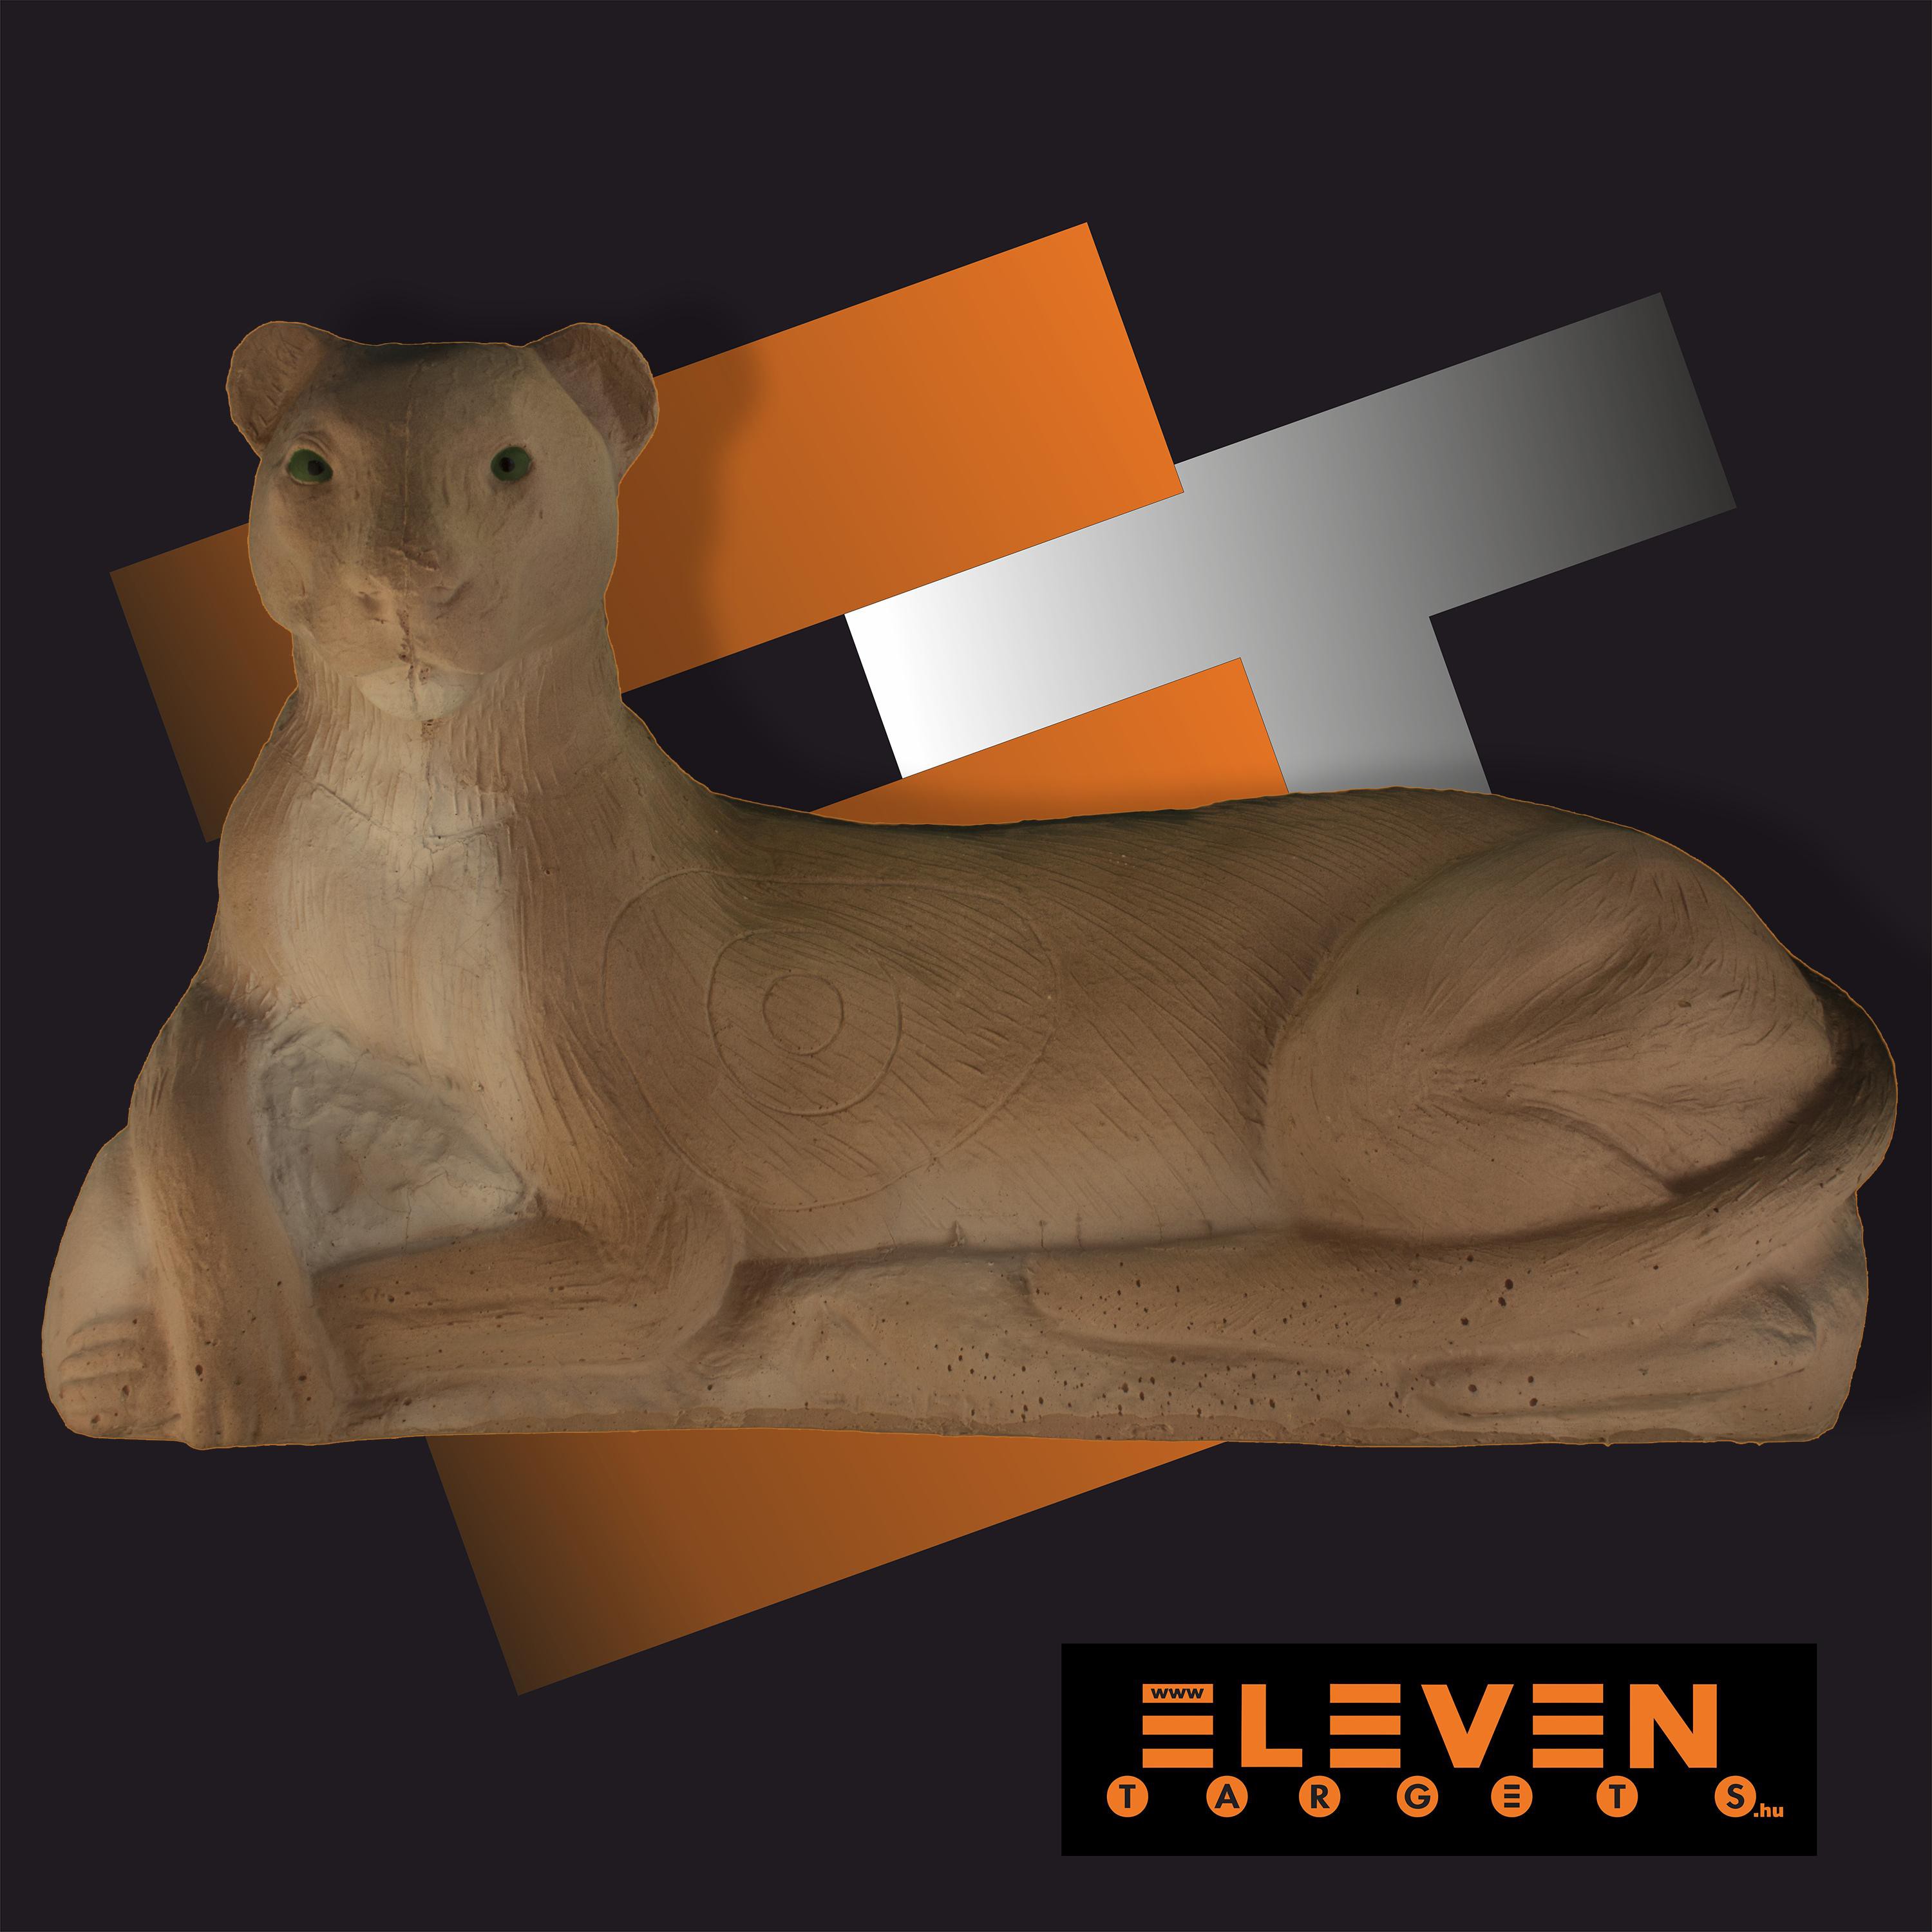  Eleven Cougar E 14A 3D Target